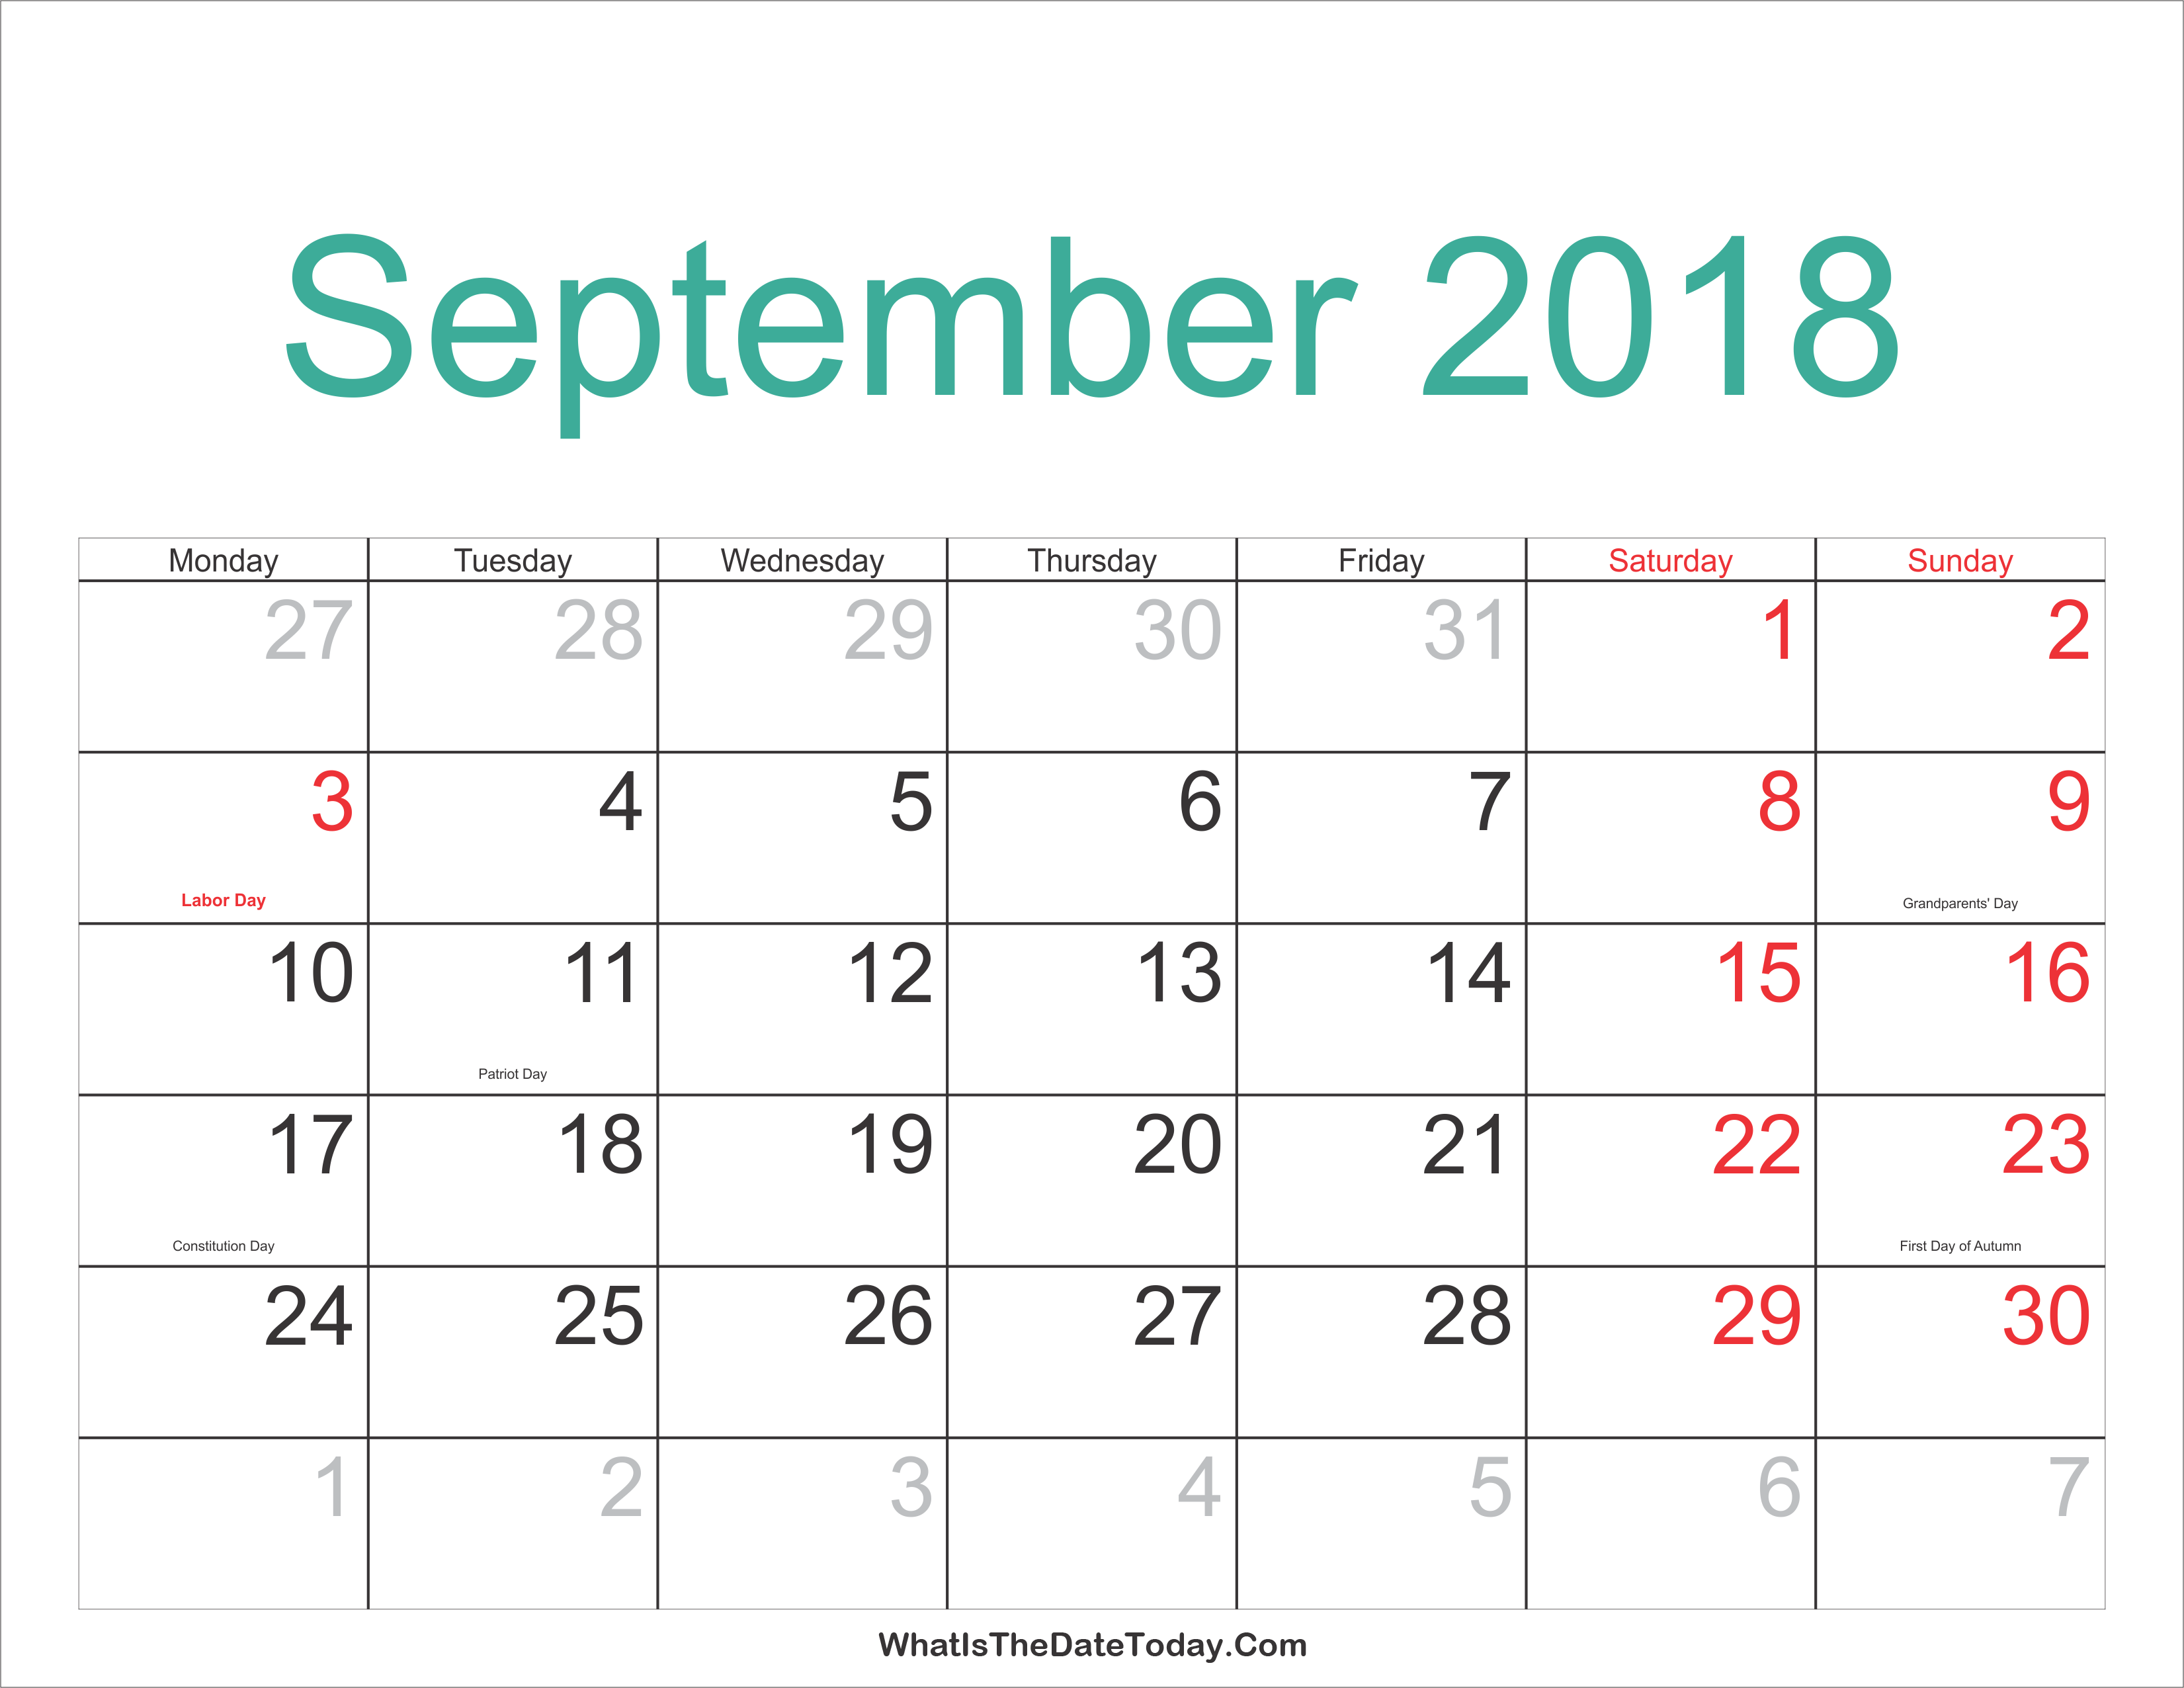 september-2018-calendar-printable-with-holidays-whatisthedatetoday-com